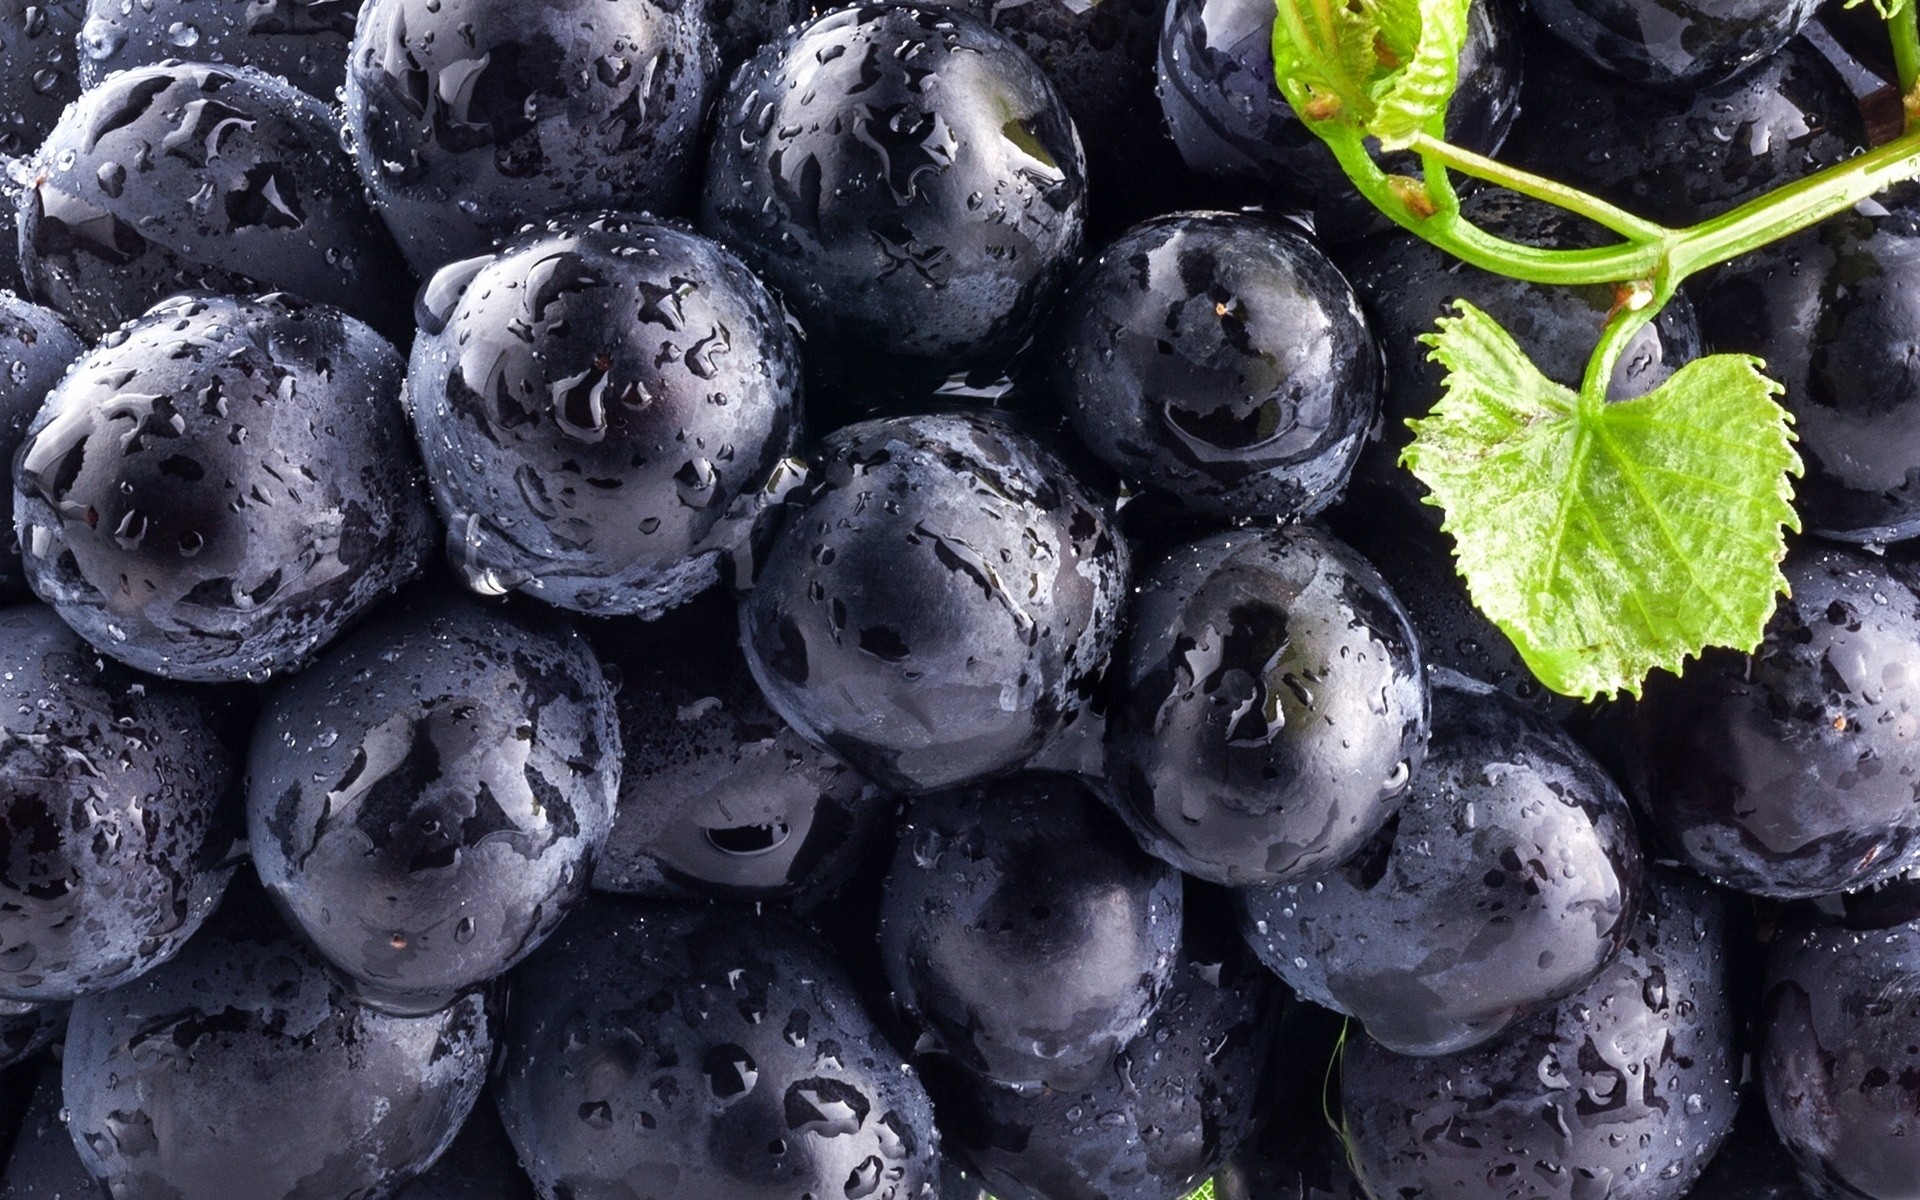 General 1920x1200 food macro fruit water drops berries blueberries